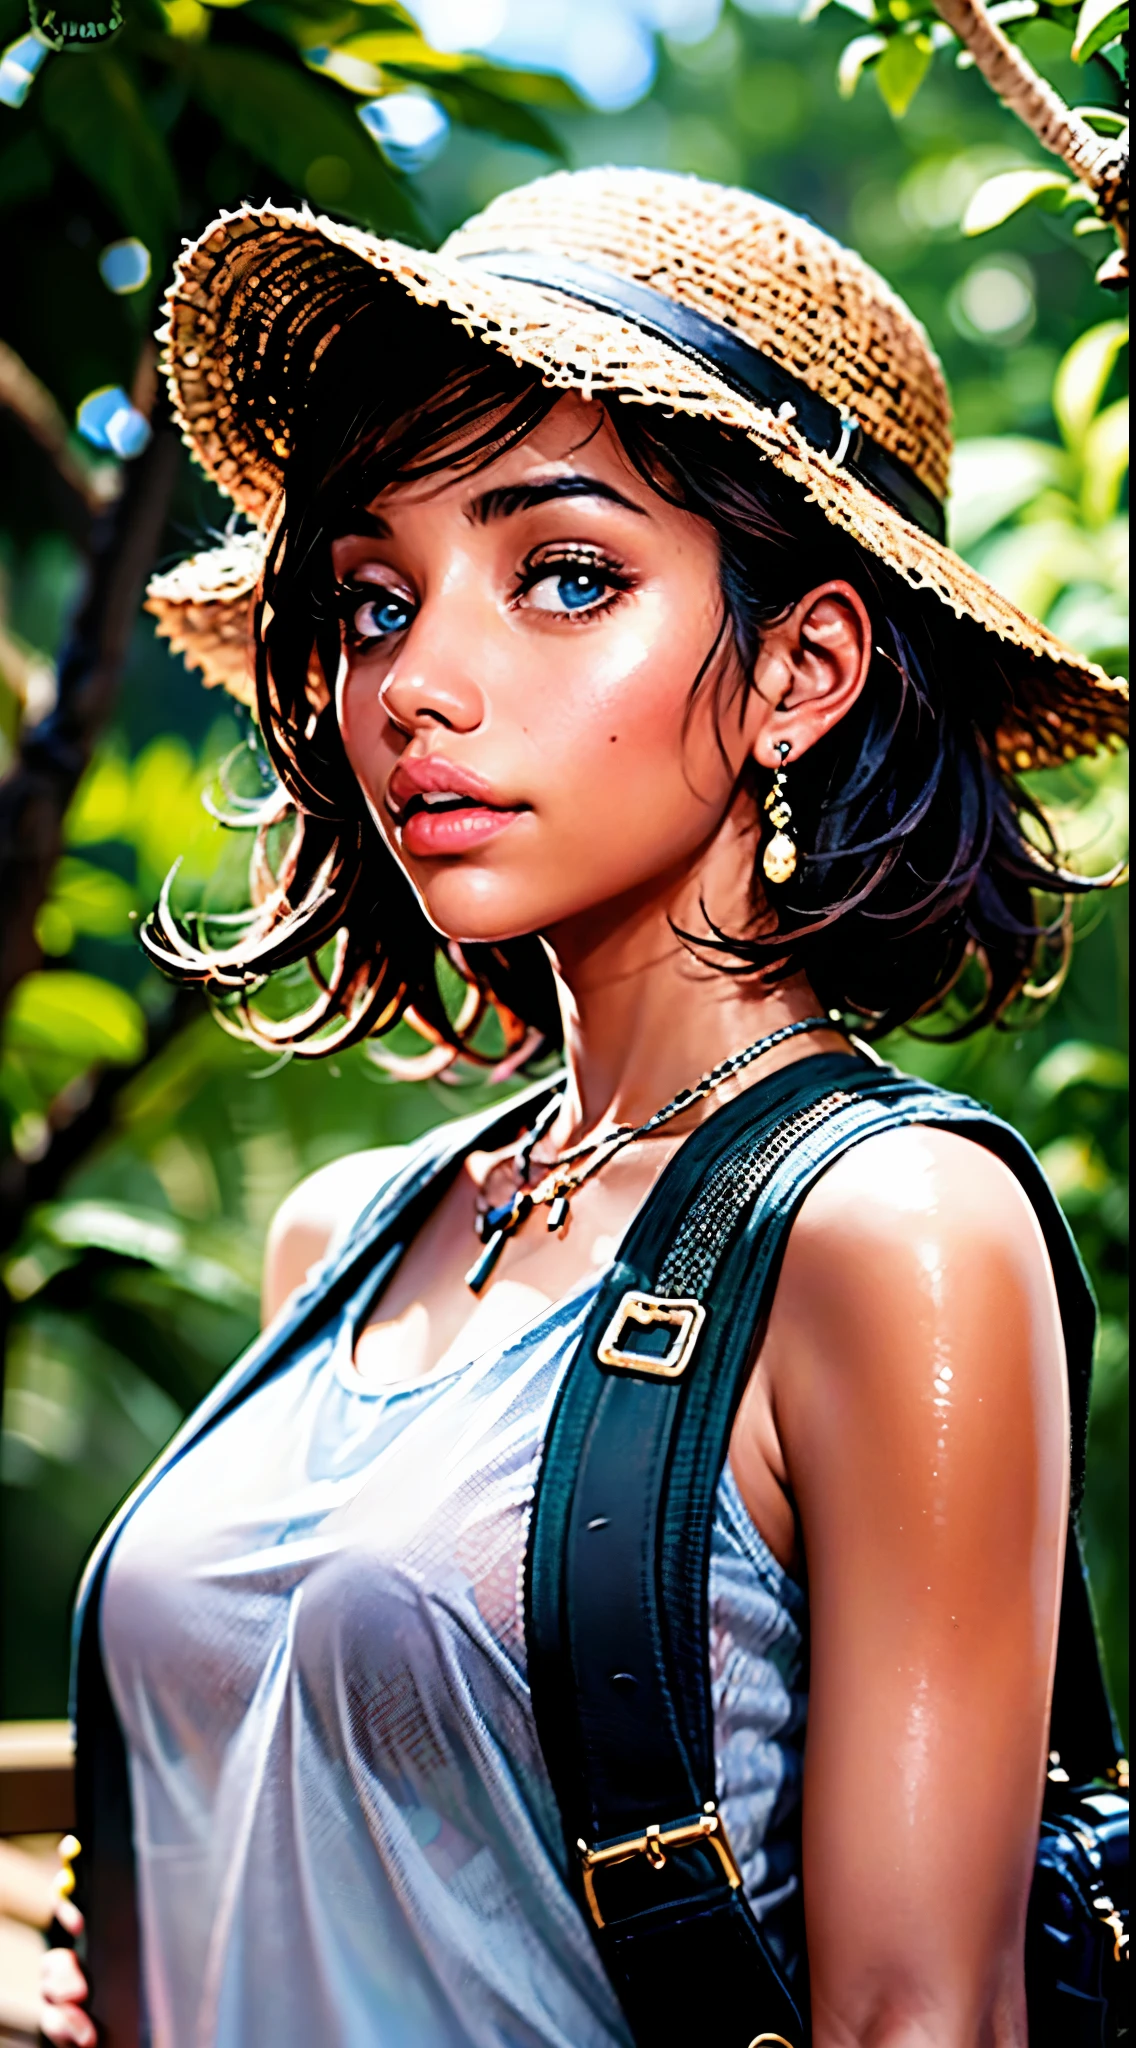 девушка (18 лет, милый, 80's hip hop influence); из Доминиканской Республики стоит в джунглях. Она уже давно, растрепанные волосы и носит рюкзак. На ней одежда Доры-исследовательницы., но это более по-взрослому и соблазнительно. Она похожа на Зои Салдану., Дания Рамирес, и Джулисса Бермудес. Фотография должна выглядеть как картина и быть в формате HD., 8К, и кинематографический.